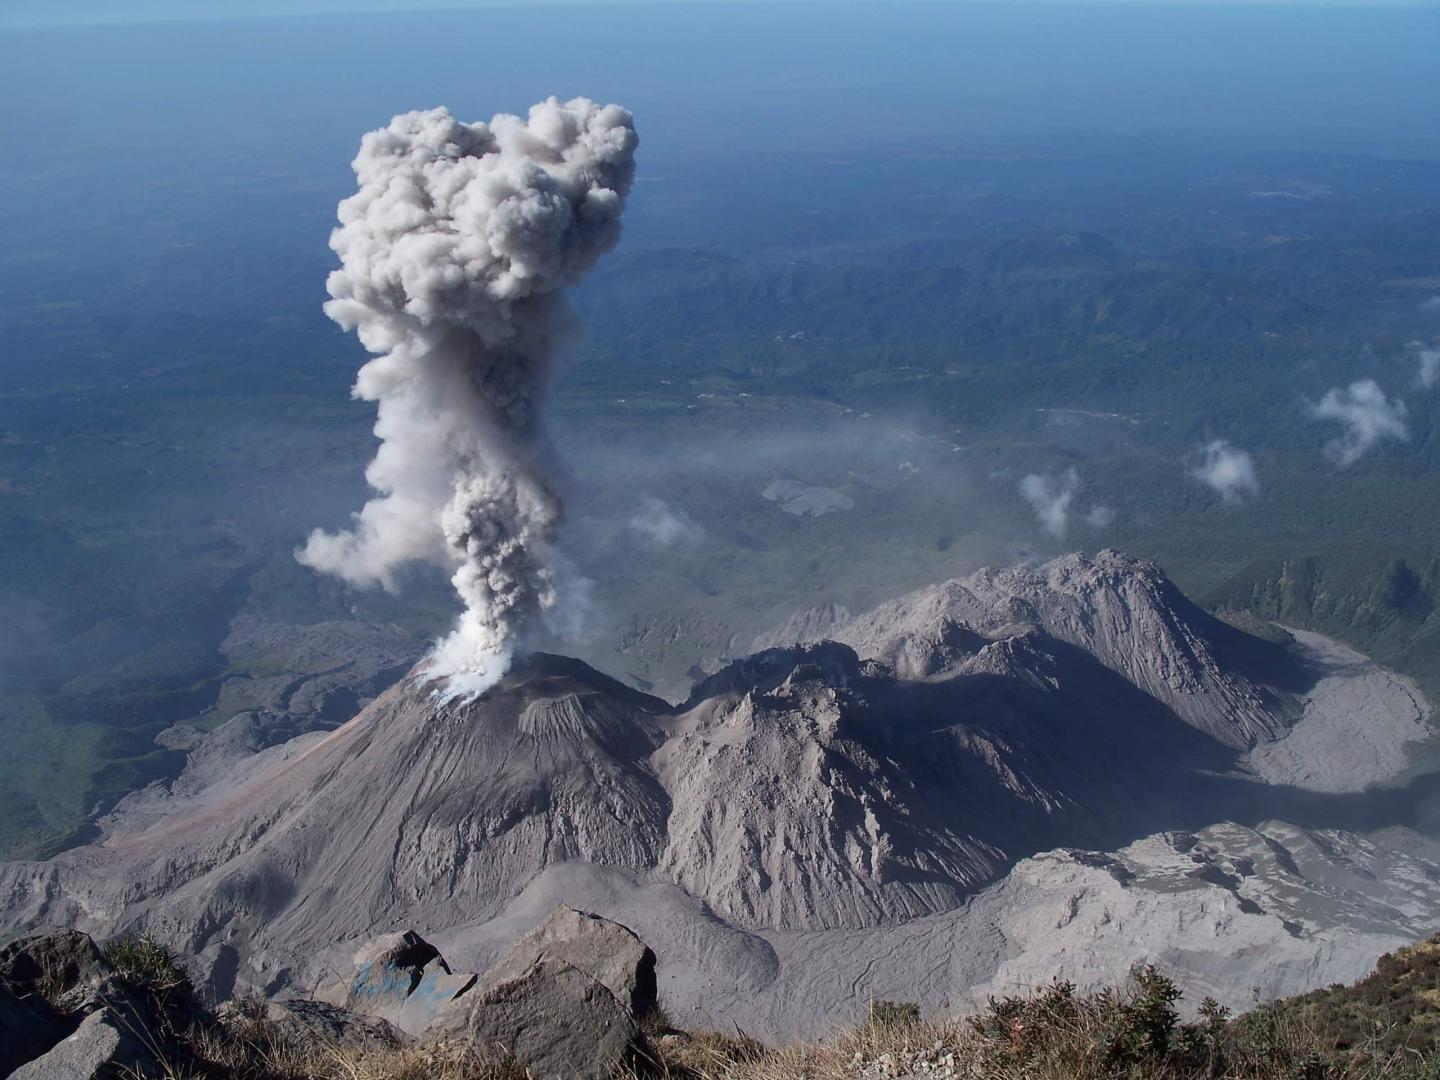 Volcán Santiguito lanza cenizas en 2012, cuando fue considerado el volcán más activo de Guatemala (AP Images)